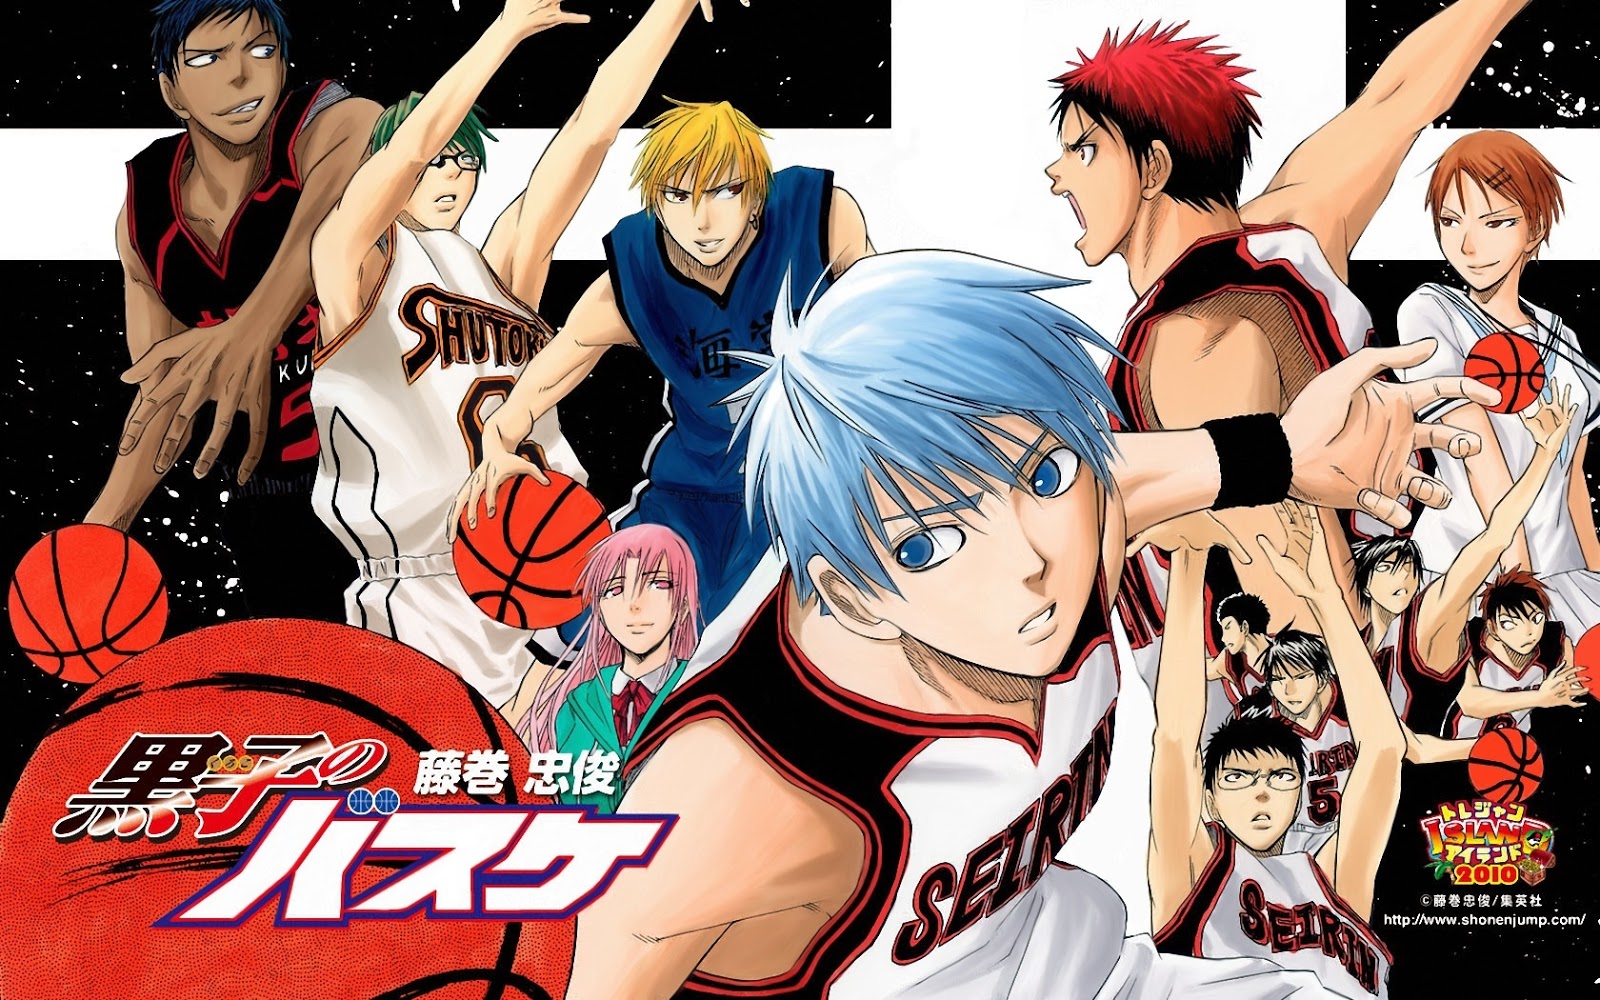 Marcadores da Leitura: [Dica de Anime]: Kuroko no Basket